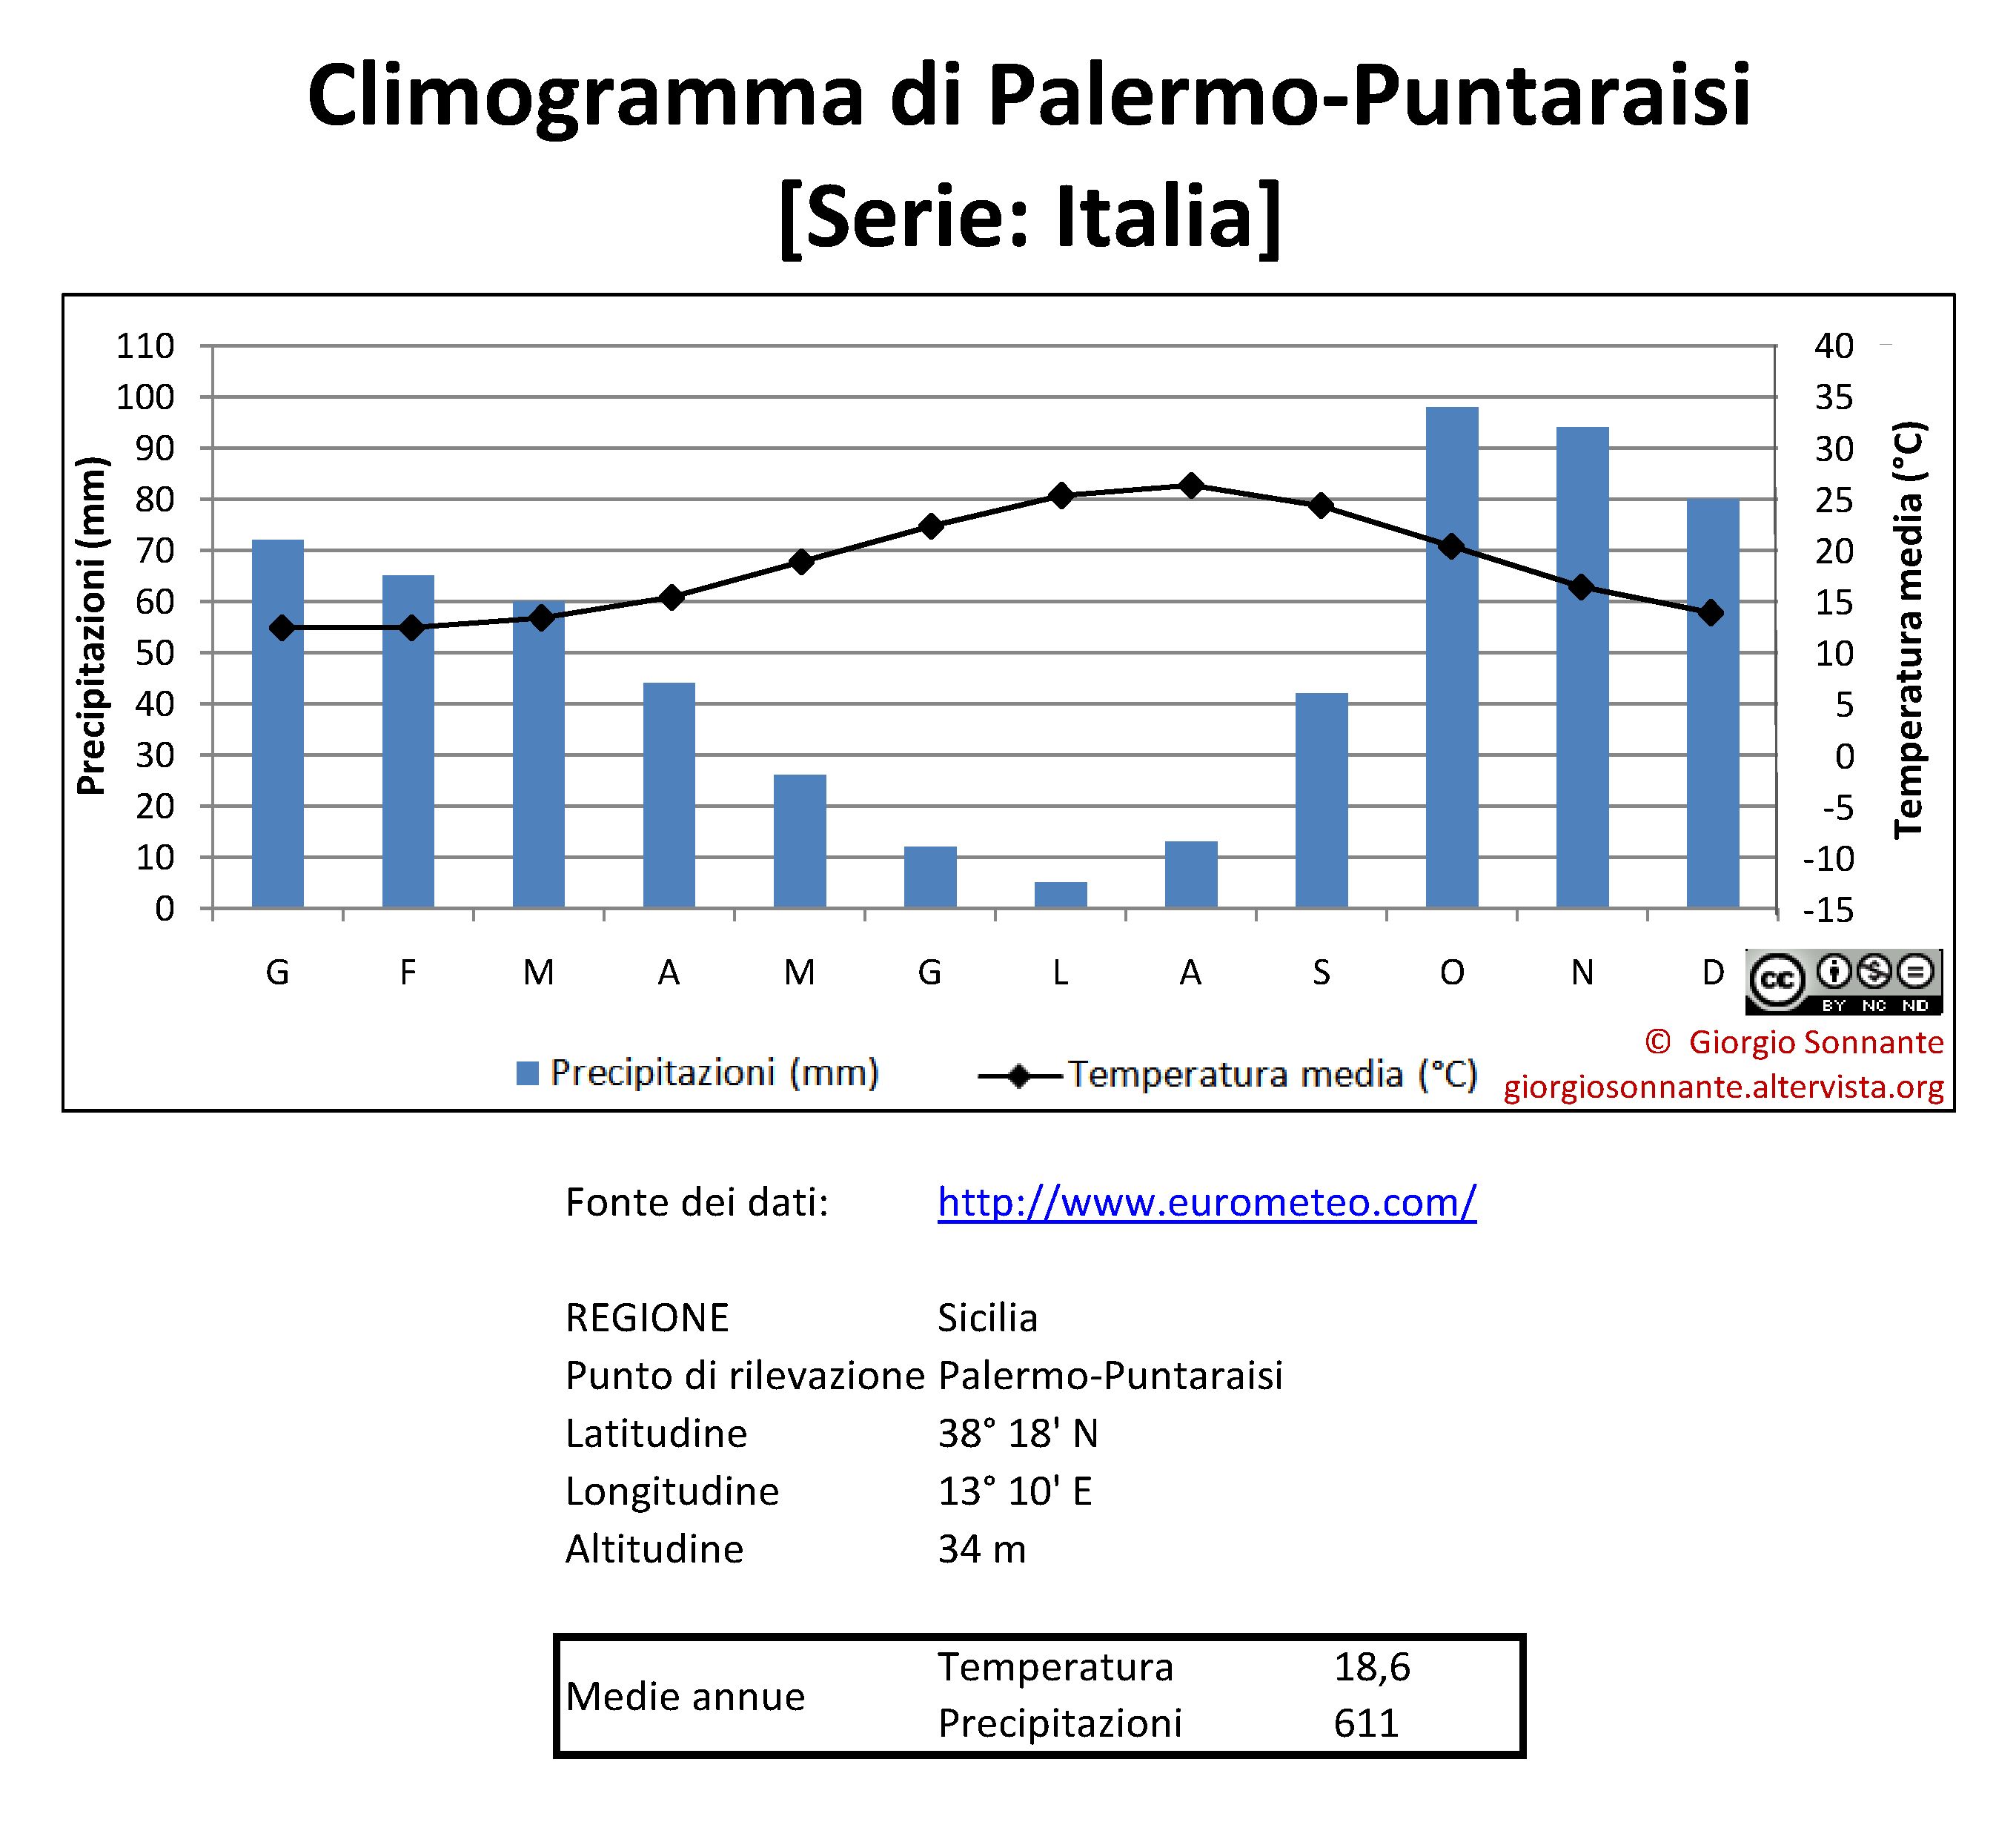 Palermo-Puntaraisi